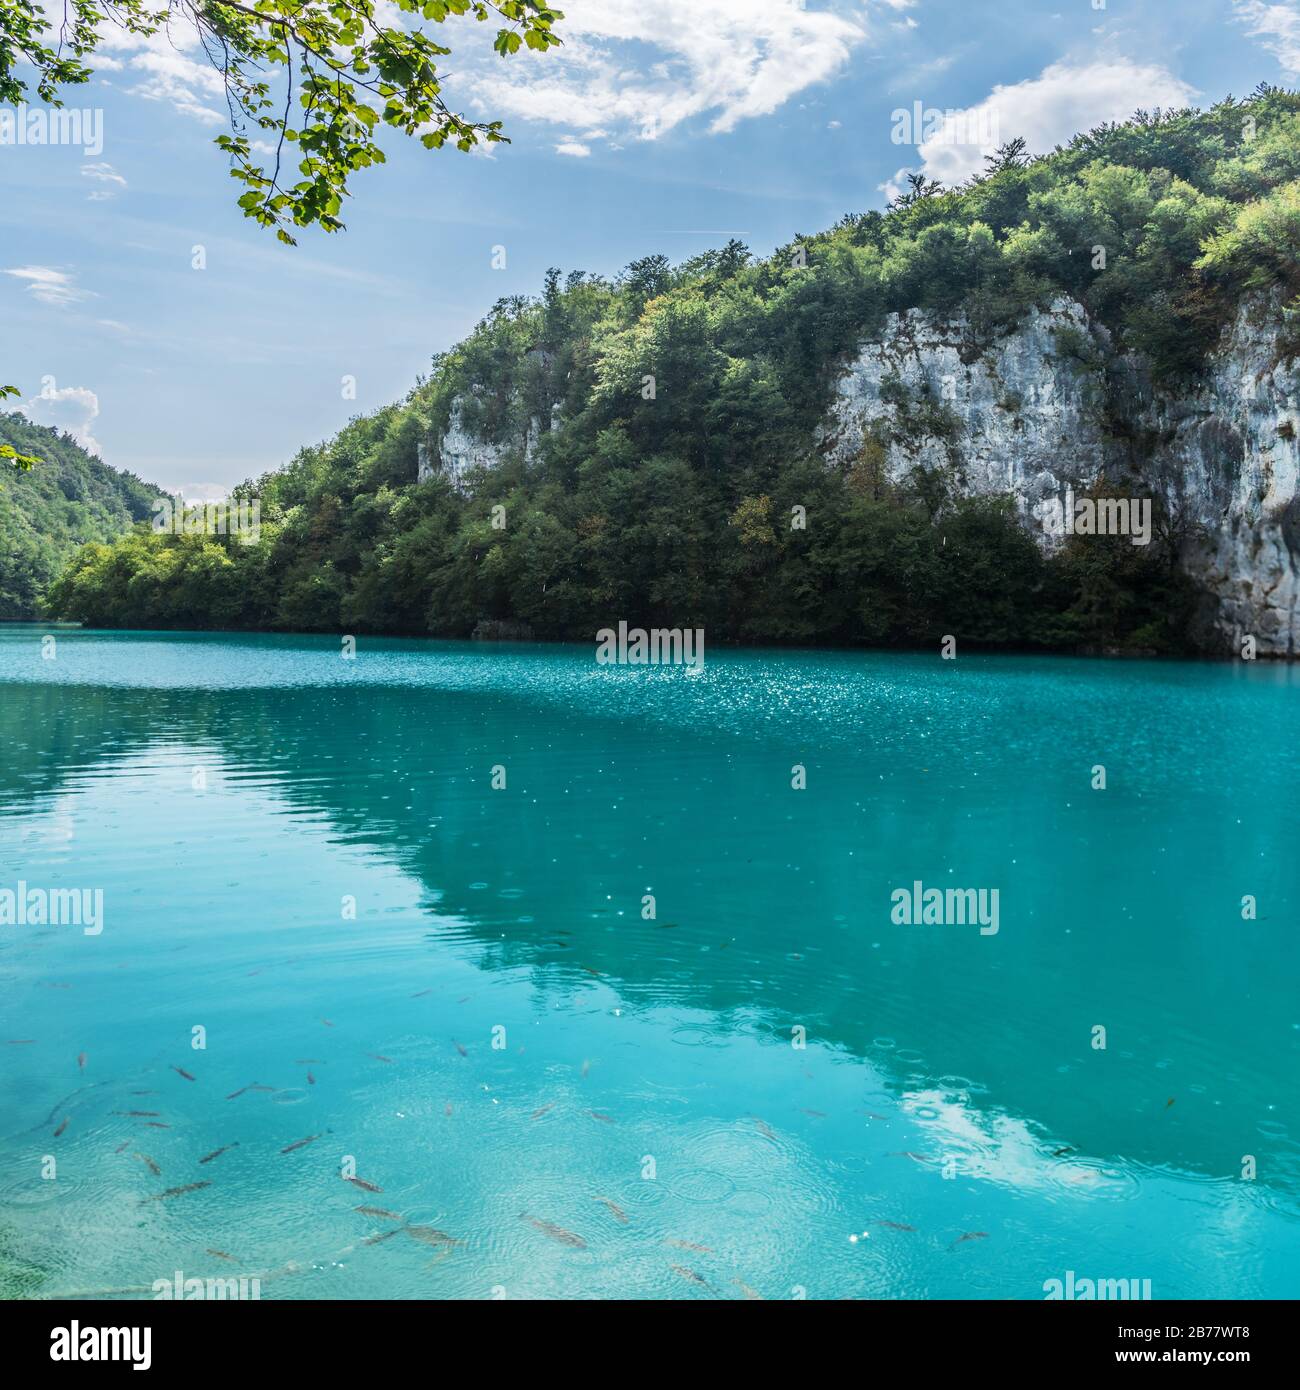 Der Nationalpark Plitvicer Seen ist einer der ältesten und größten Nationalparks in Kroatien und UNESCO-Weltkulturerbe. Schöner See im Park. Tra Stockfoto